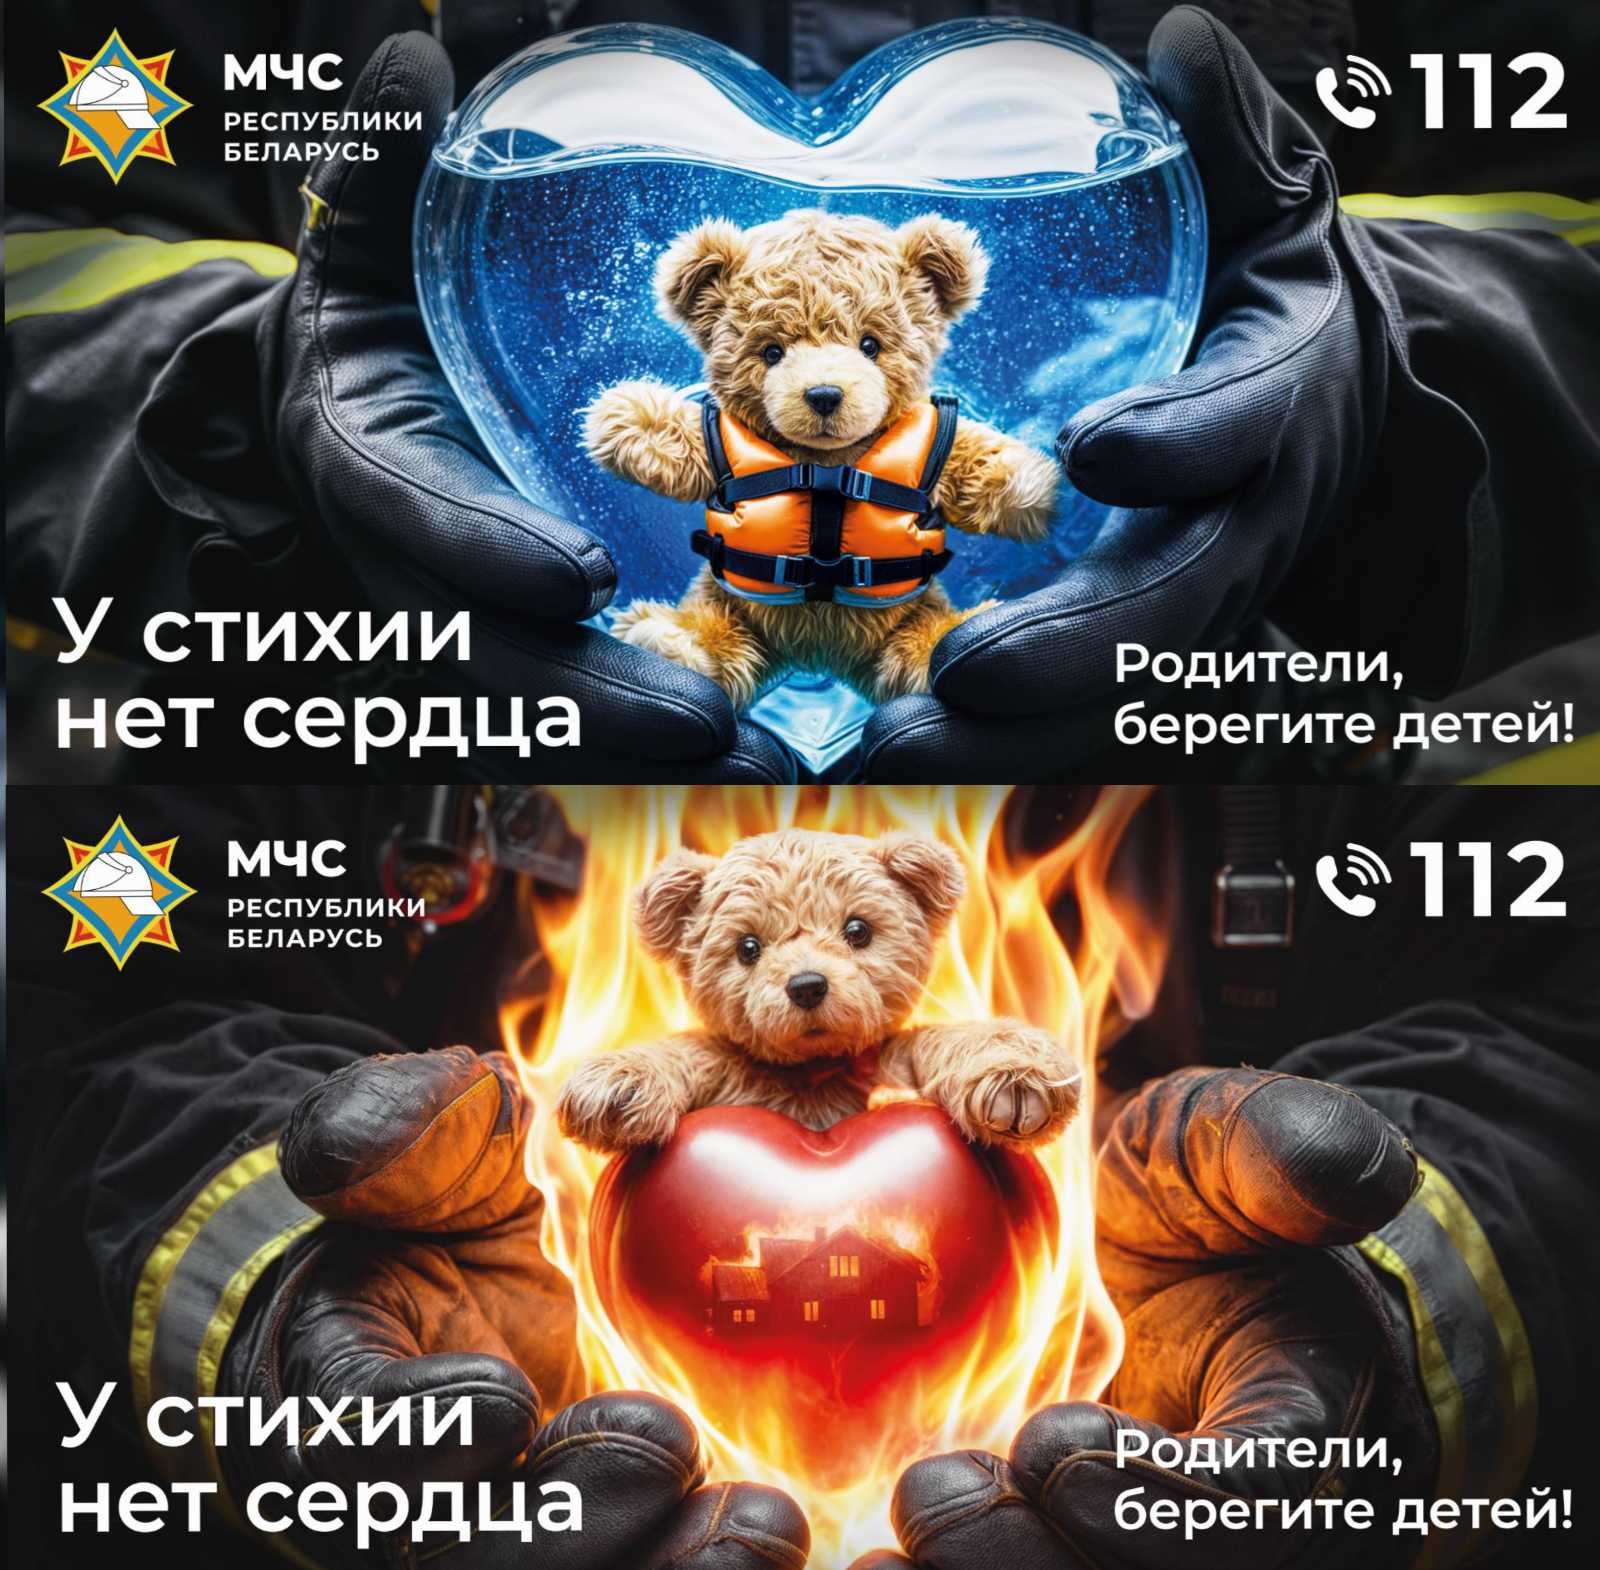 Информационная кампания от МЧС «У стихии нет сердца».